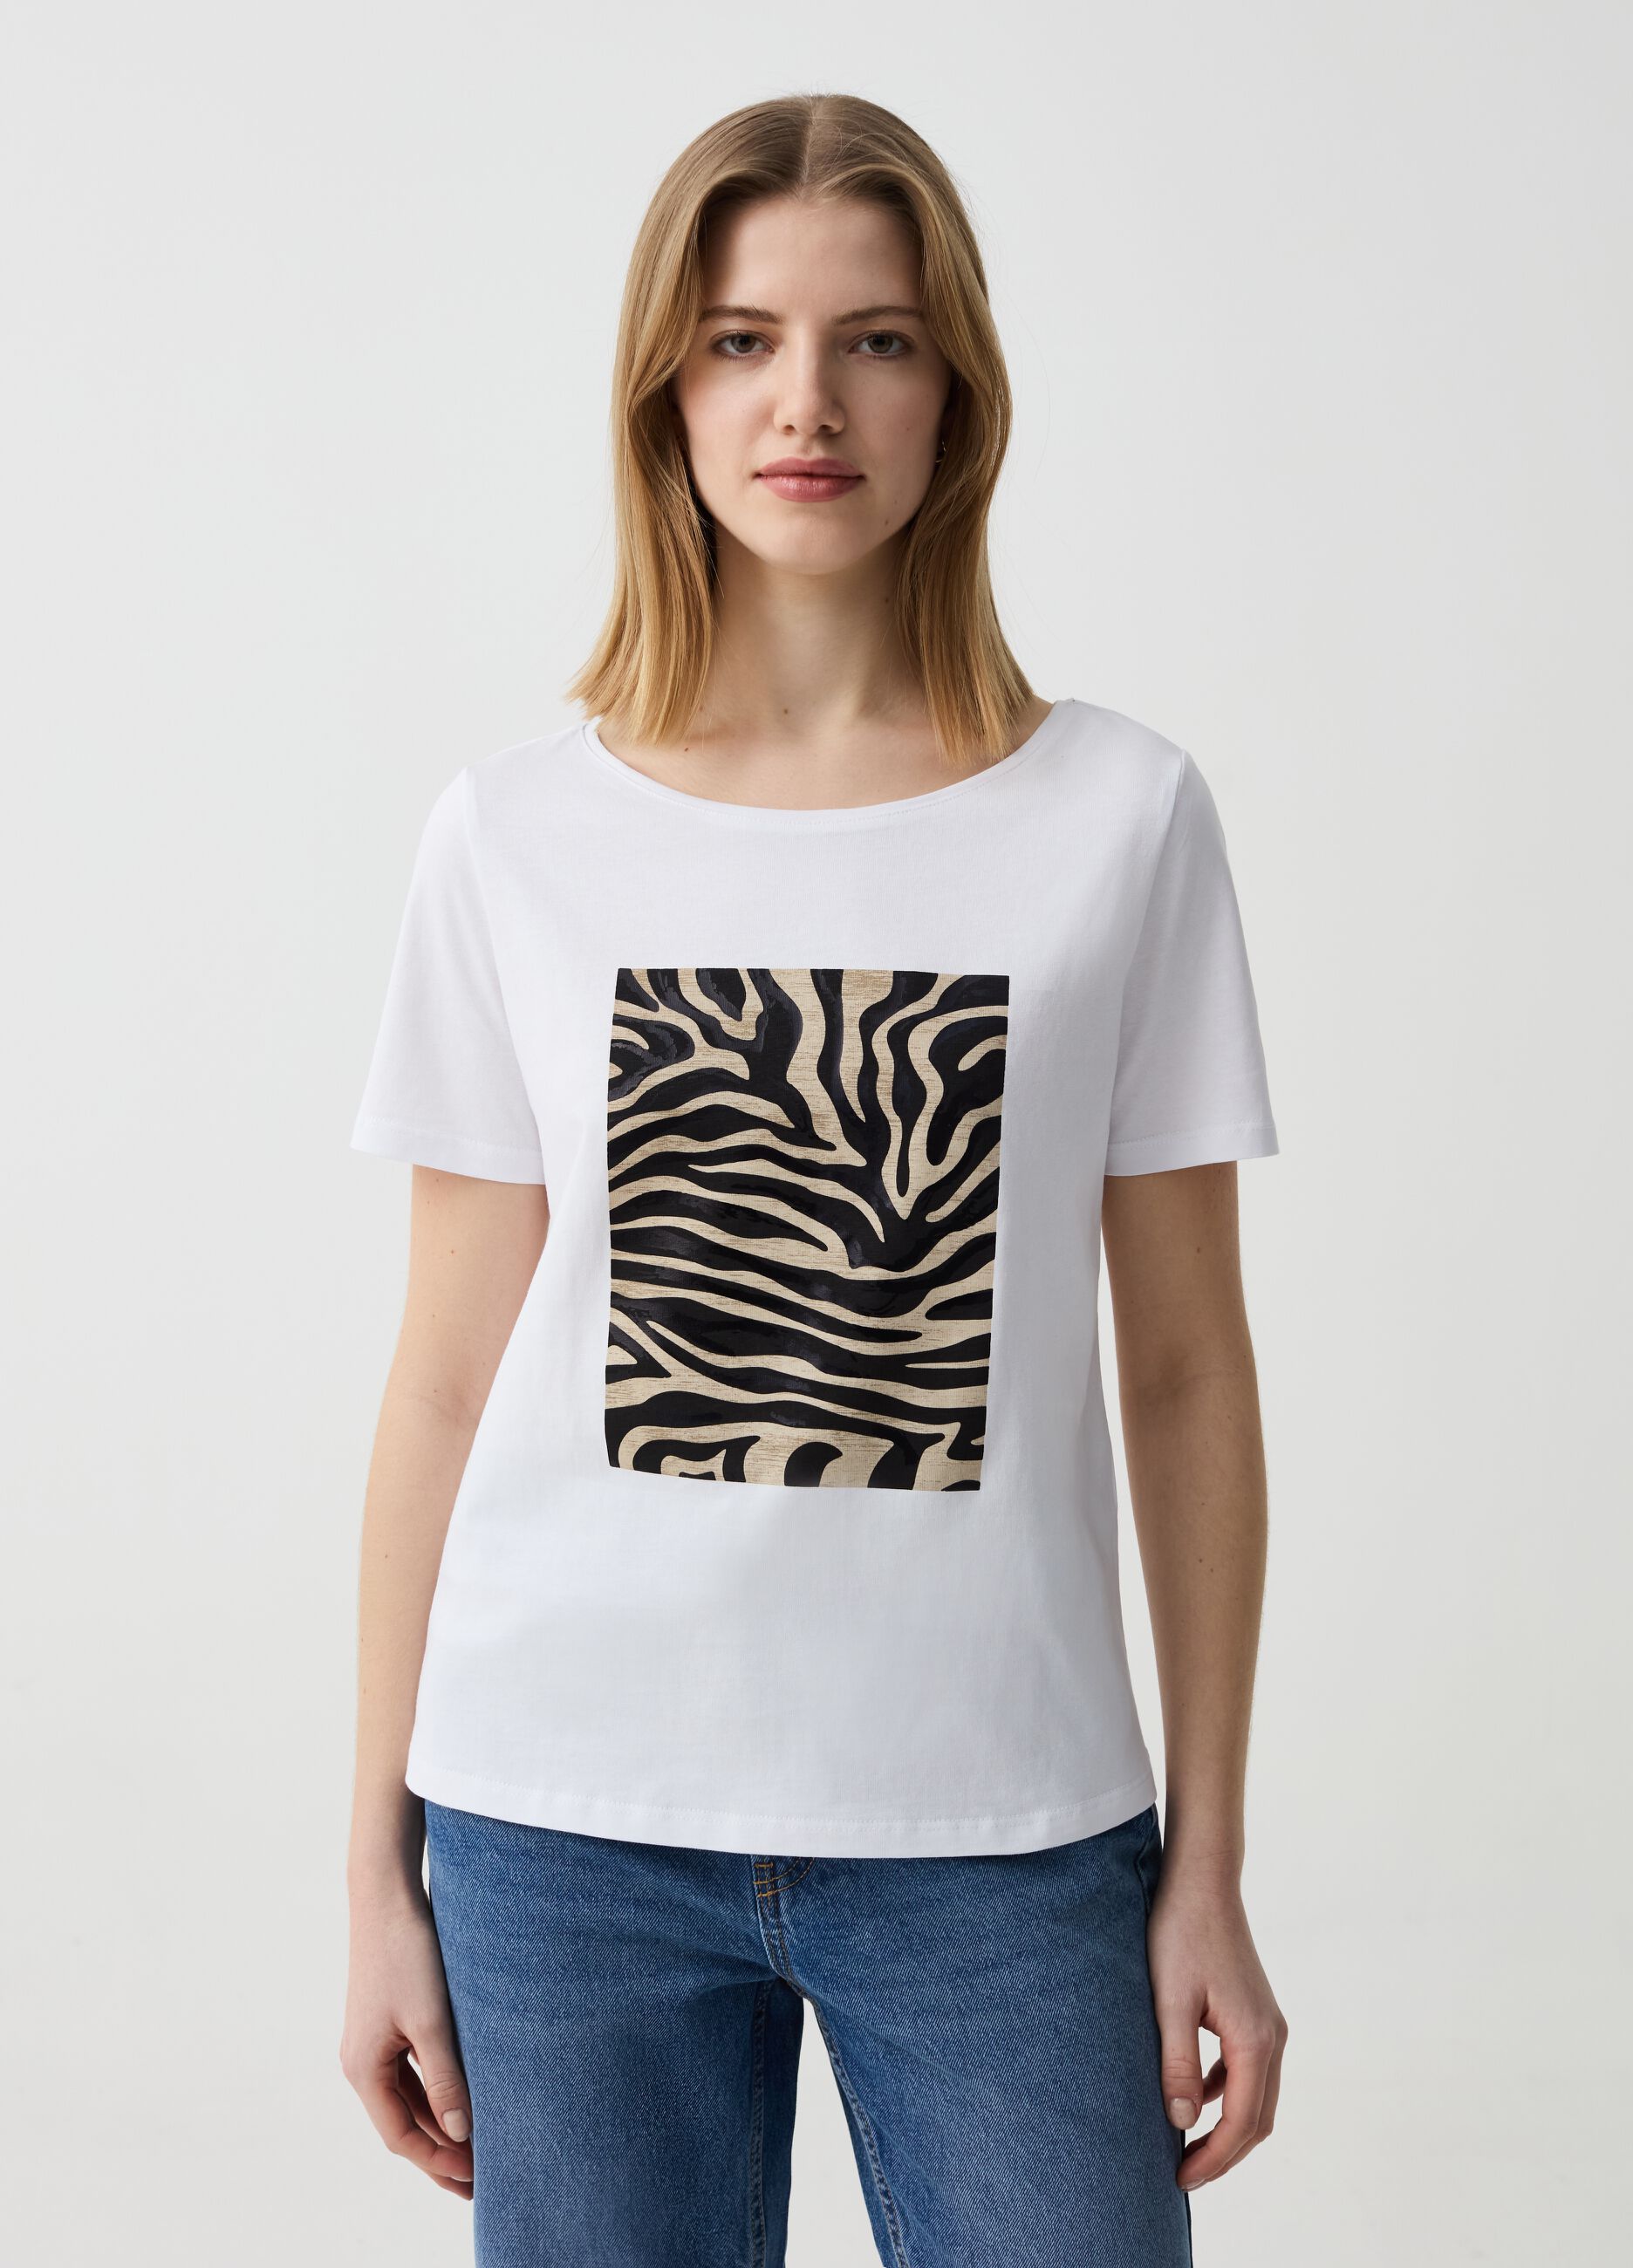 T-shirt with animal print